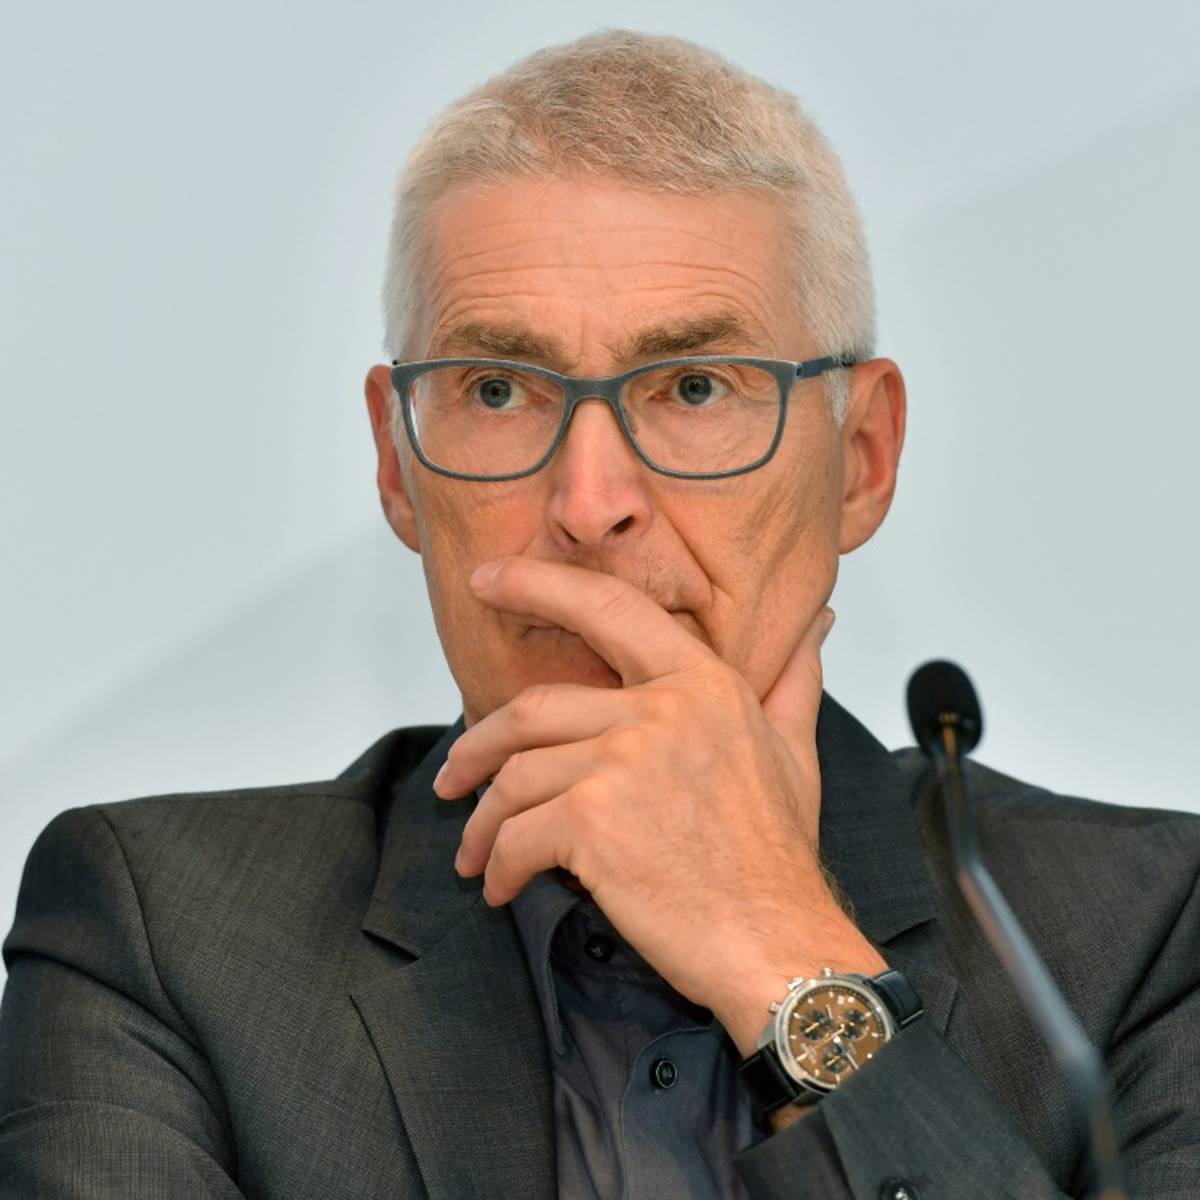 Die Schiedsrichter stehen in der laufenden Bundesliga-Saison in der Kritik. Nun gesteht auch ihr Boss Lutz Michael Fröhlich Fehler.